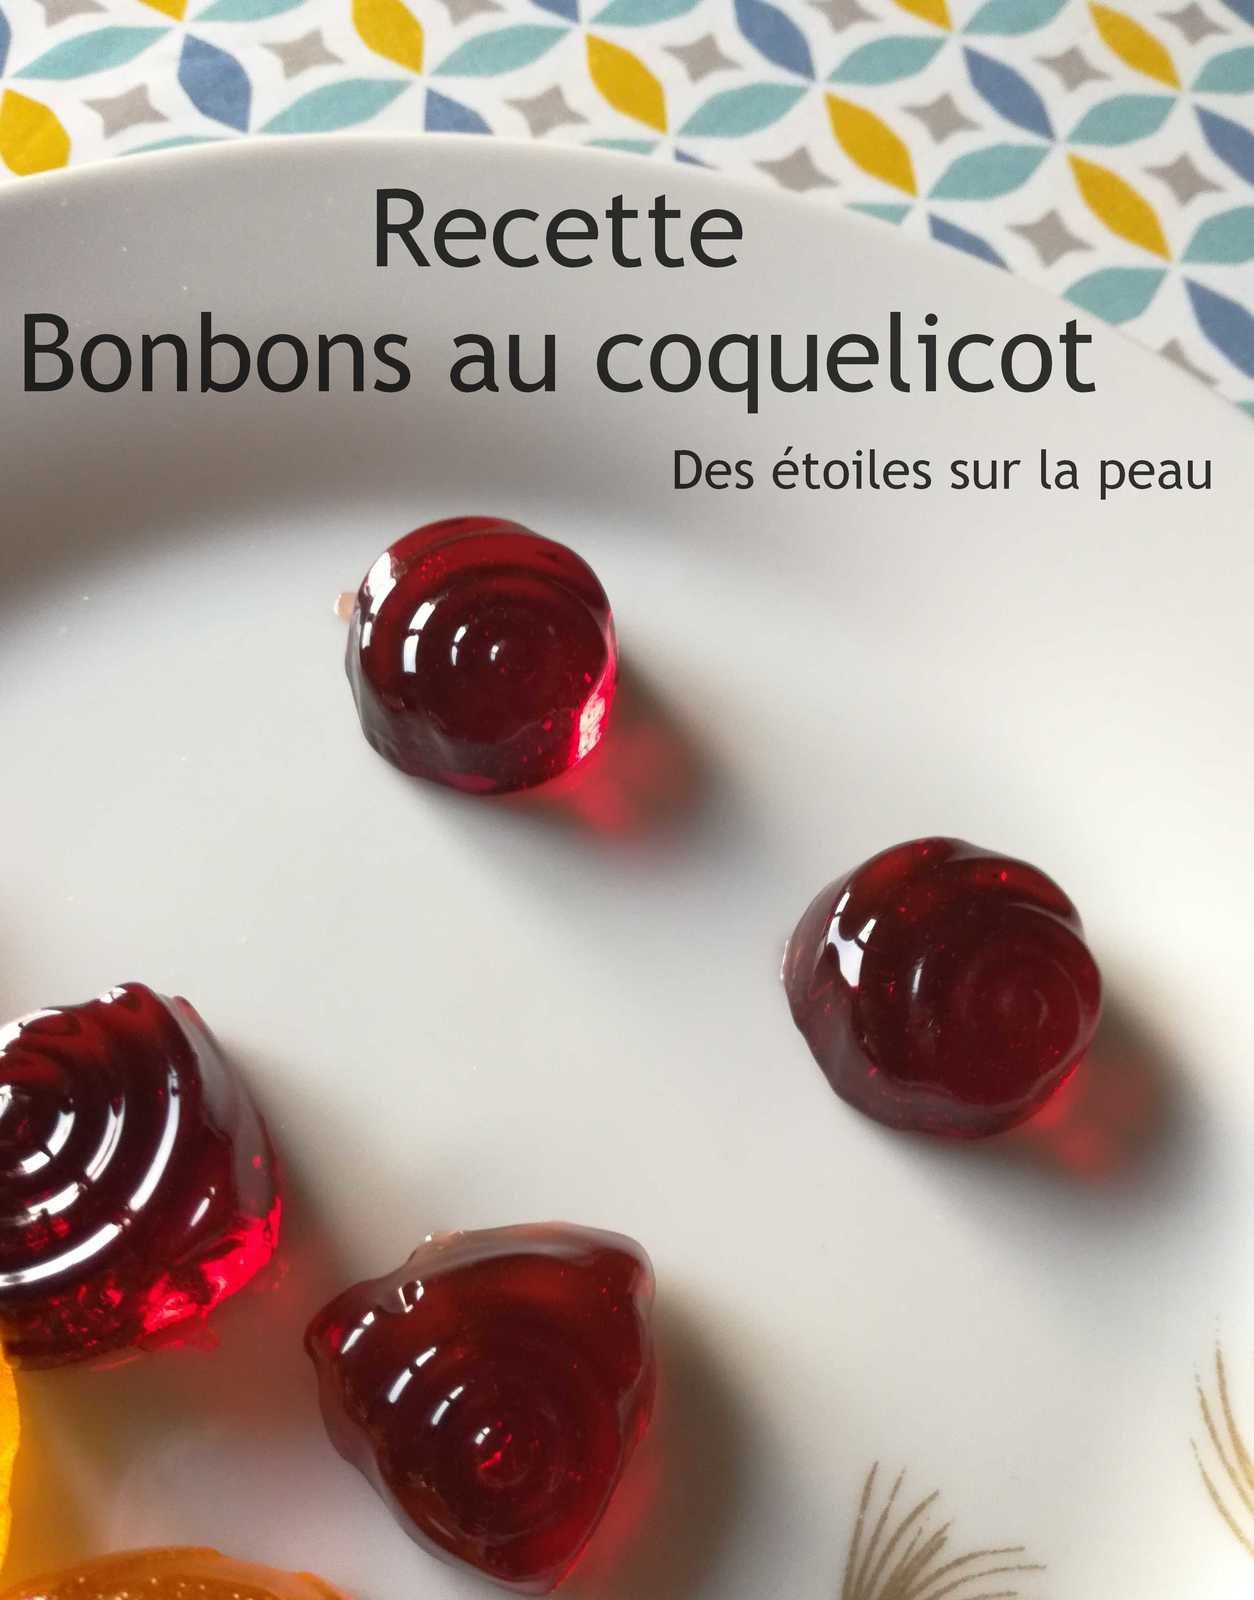 Bonbon maison au coquelicot - Recette - Le blog de des-etoiles-surlapeau